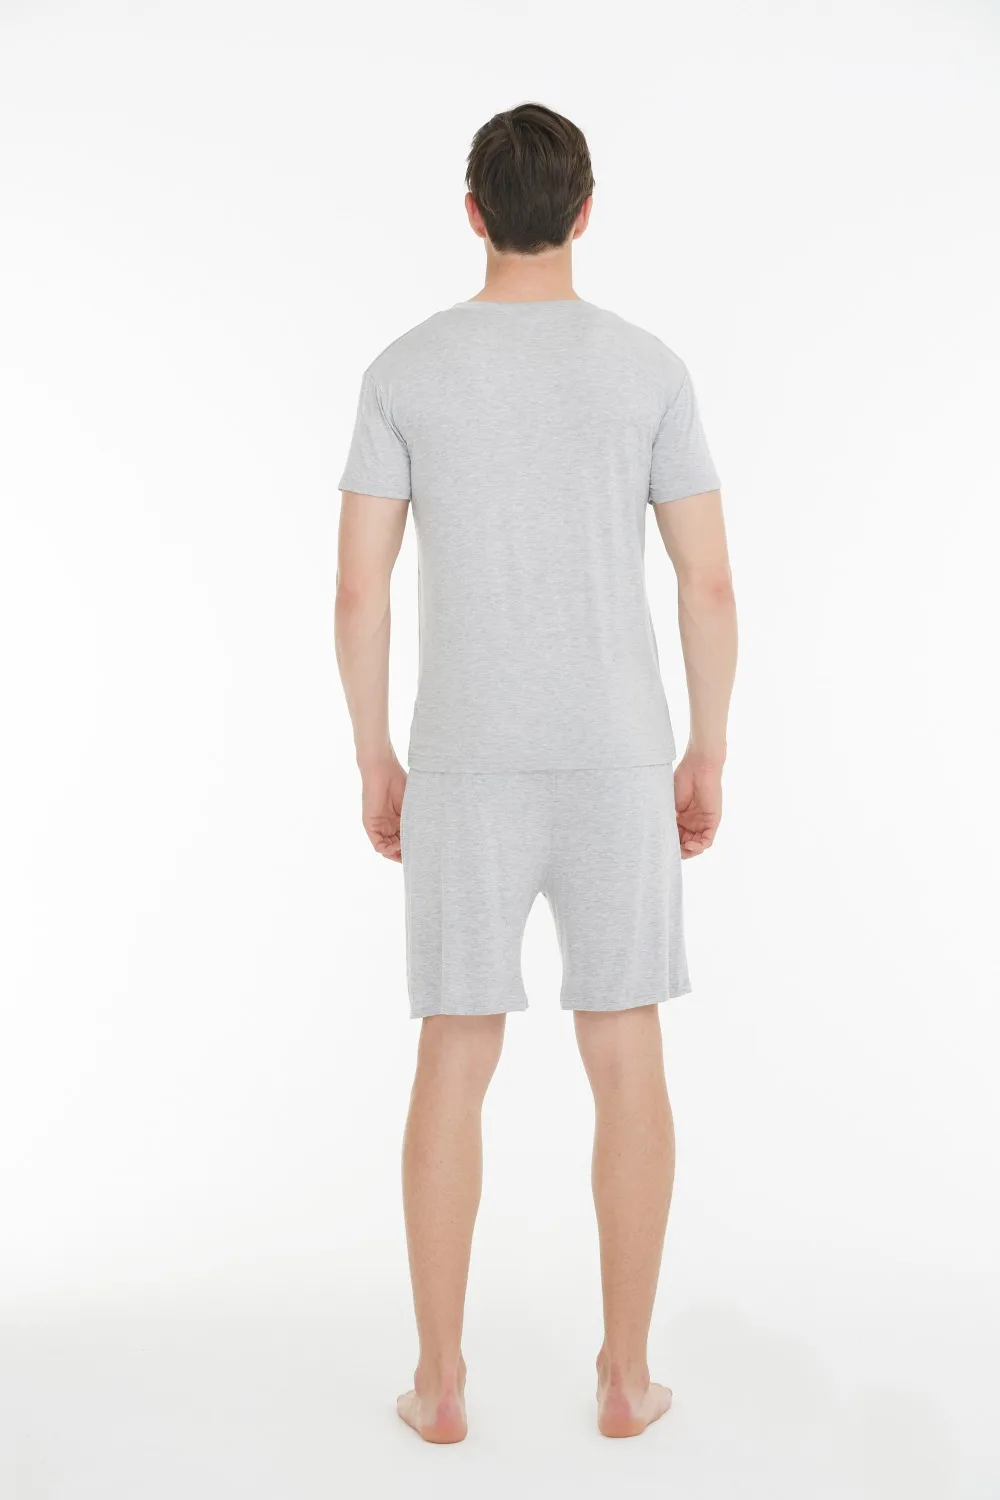 Летние мужские пижамы модал v-образным вырезом с коротким рукавом шорты Повседневный Домашний Комплект сплошной цвет домашняя повседневная одежда Hombres одежда для сна